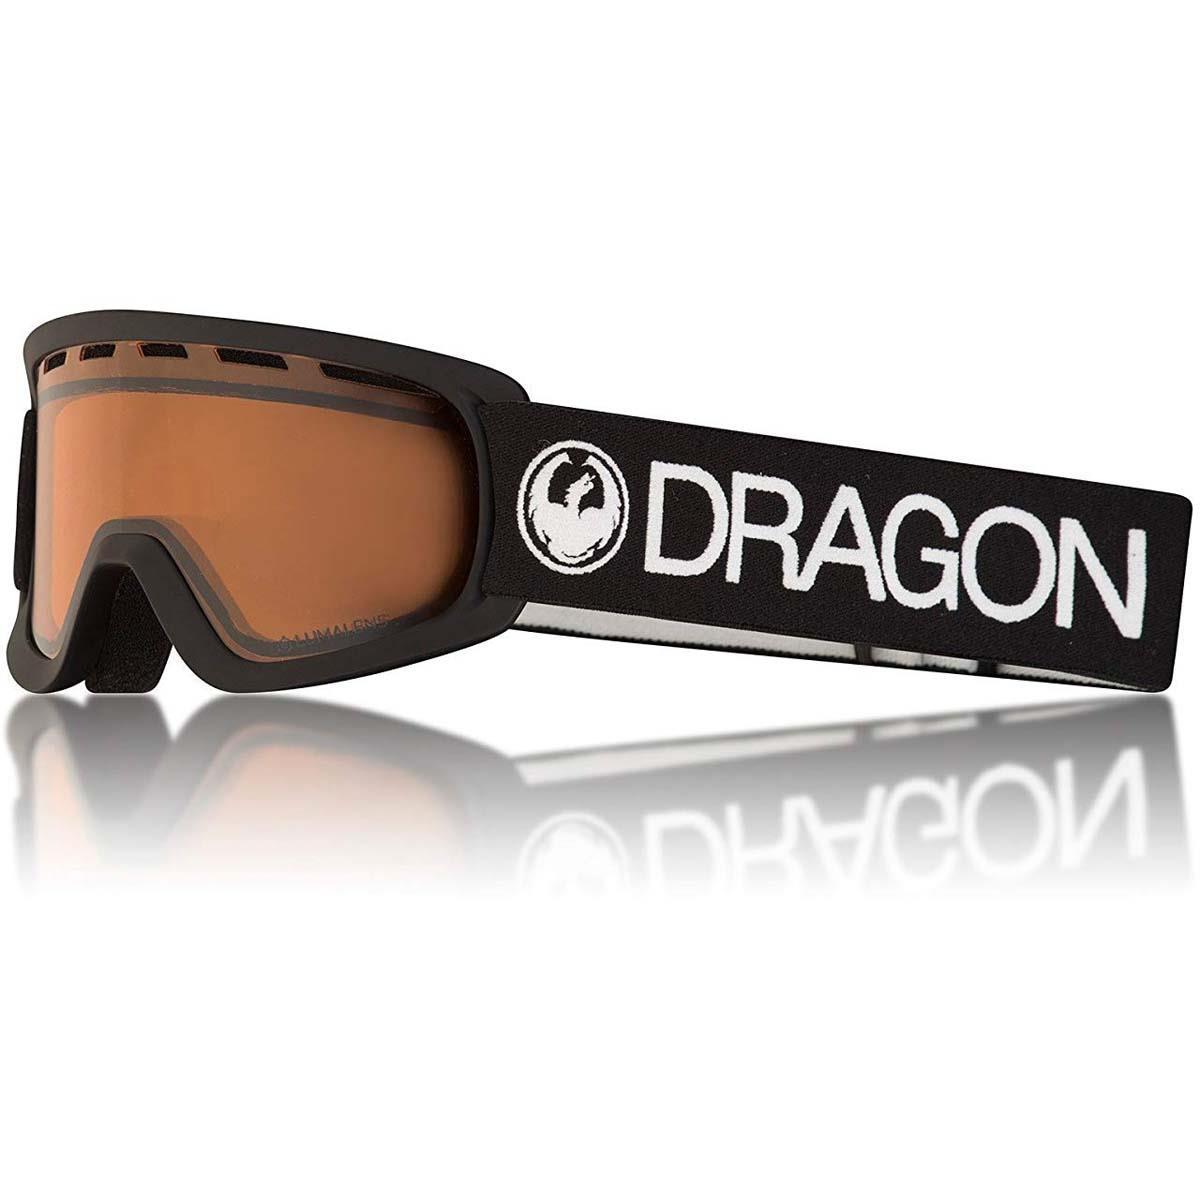 dragon snow goggles